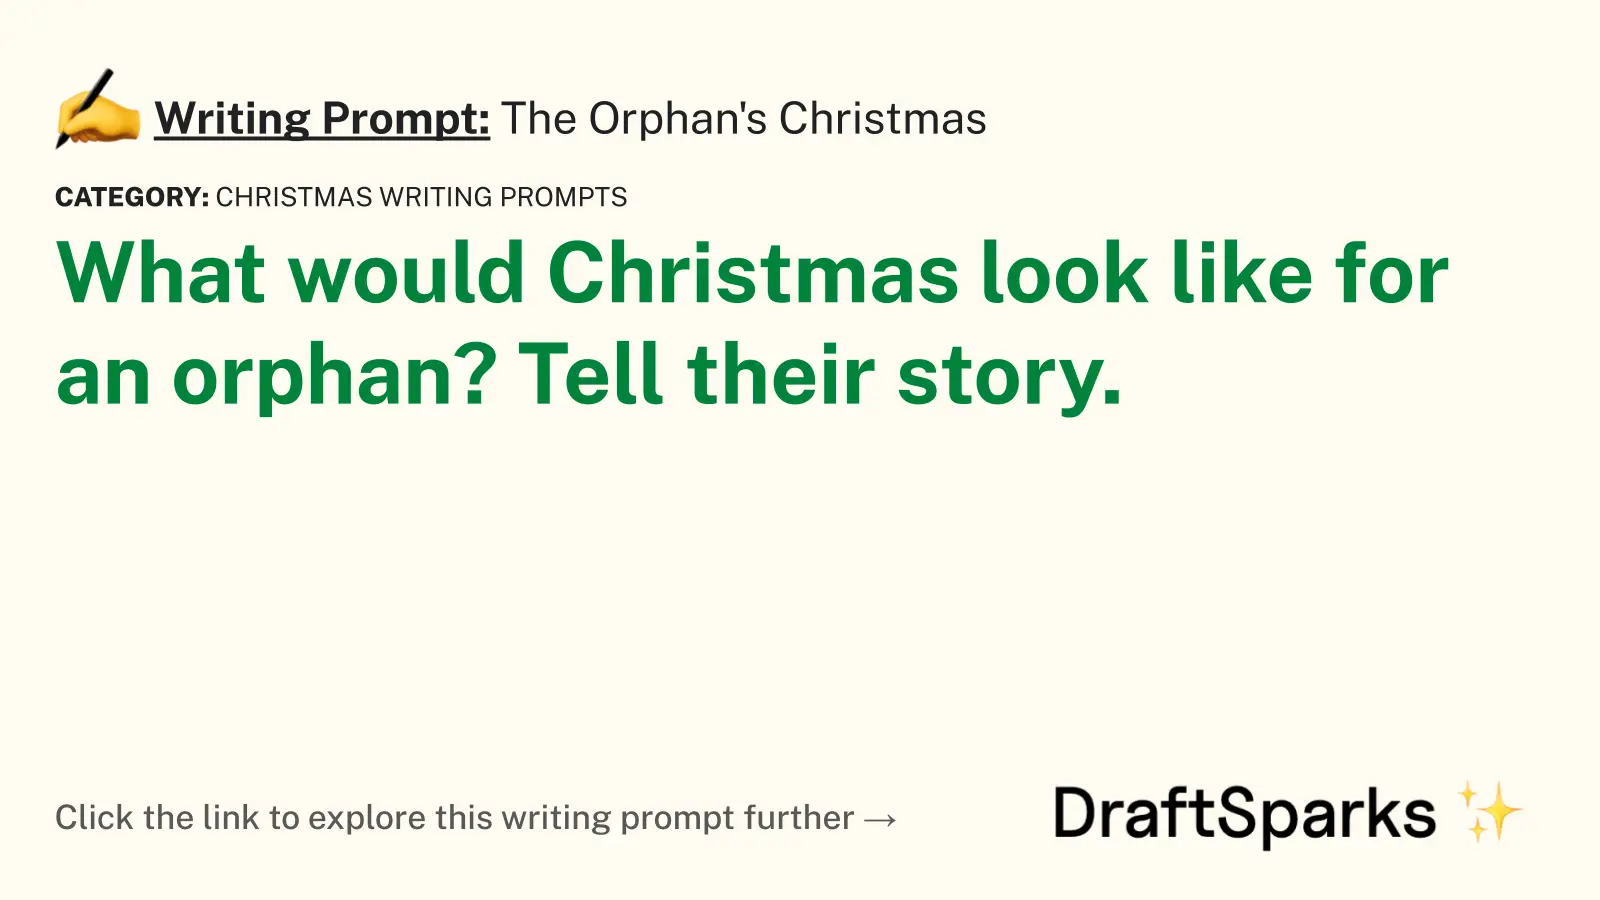 The Orphan’s Christmas